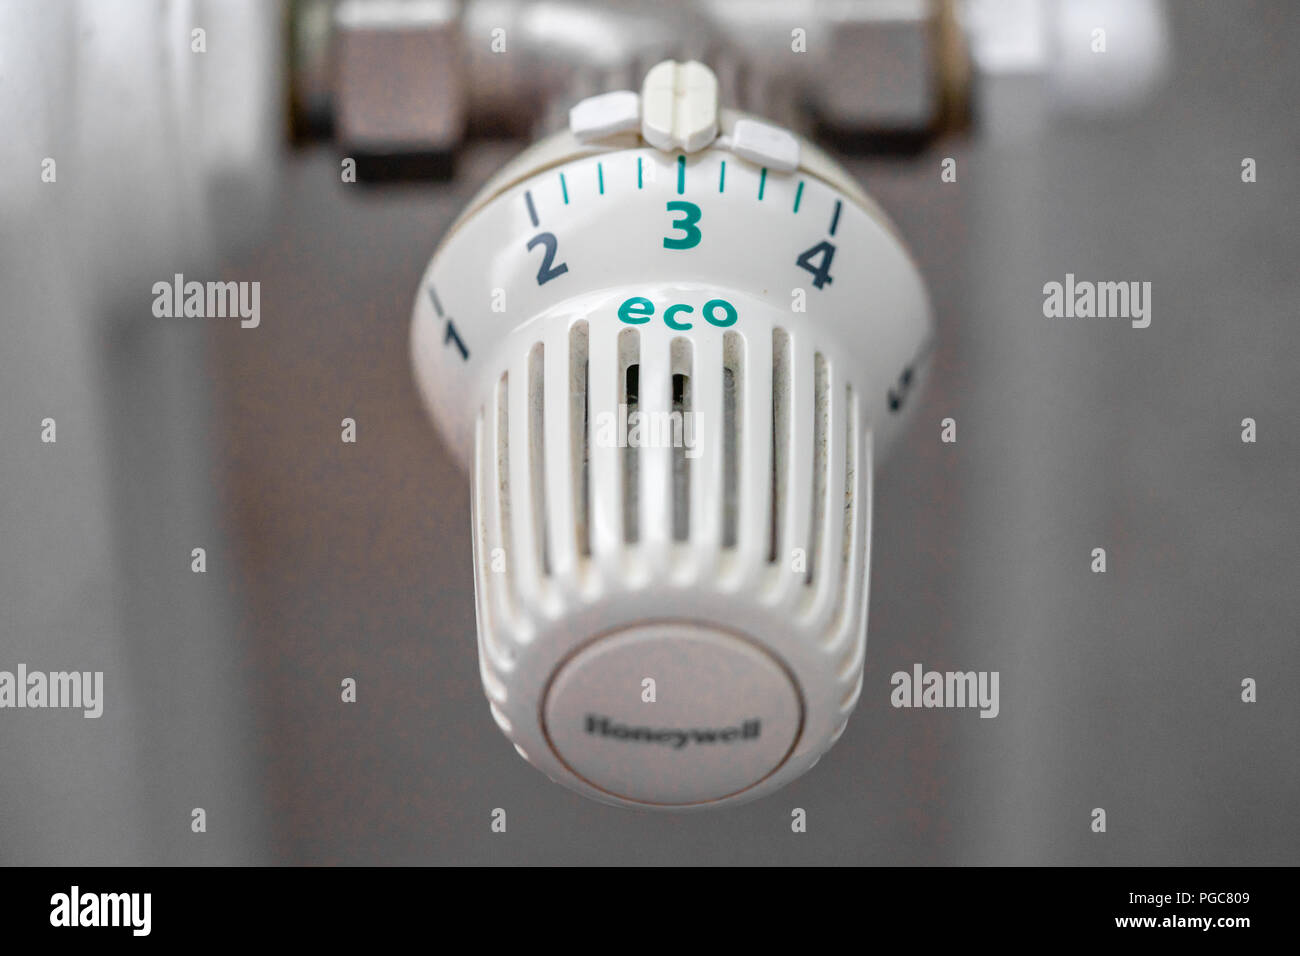 Valvola del termostato del radiatore il selettore della temperatura impostata su energia verde efficiente impostazione eco Foto Stock